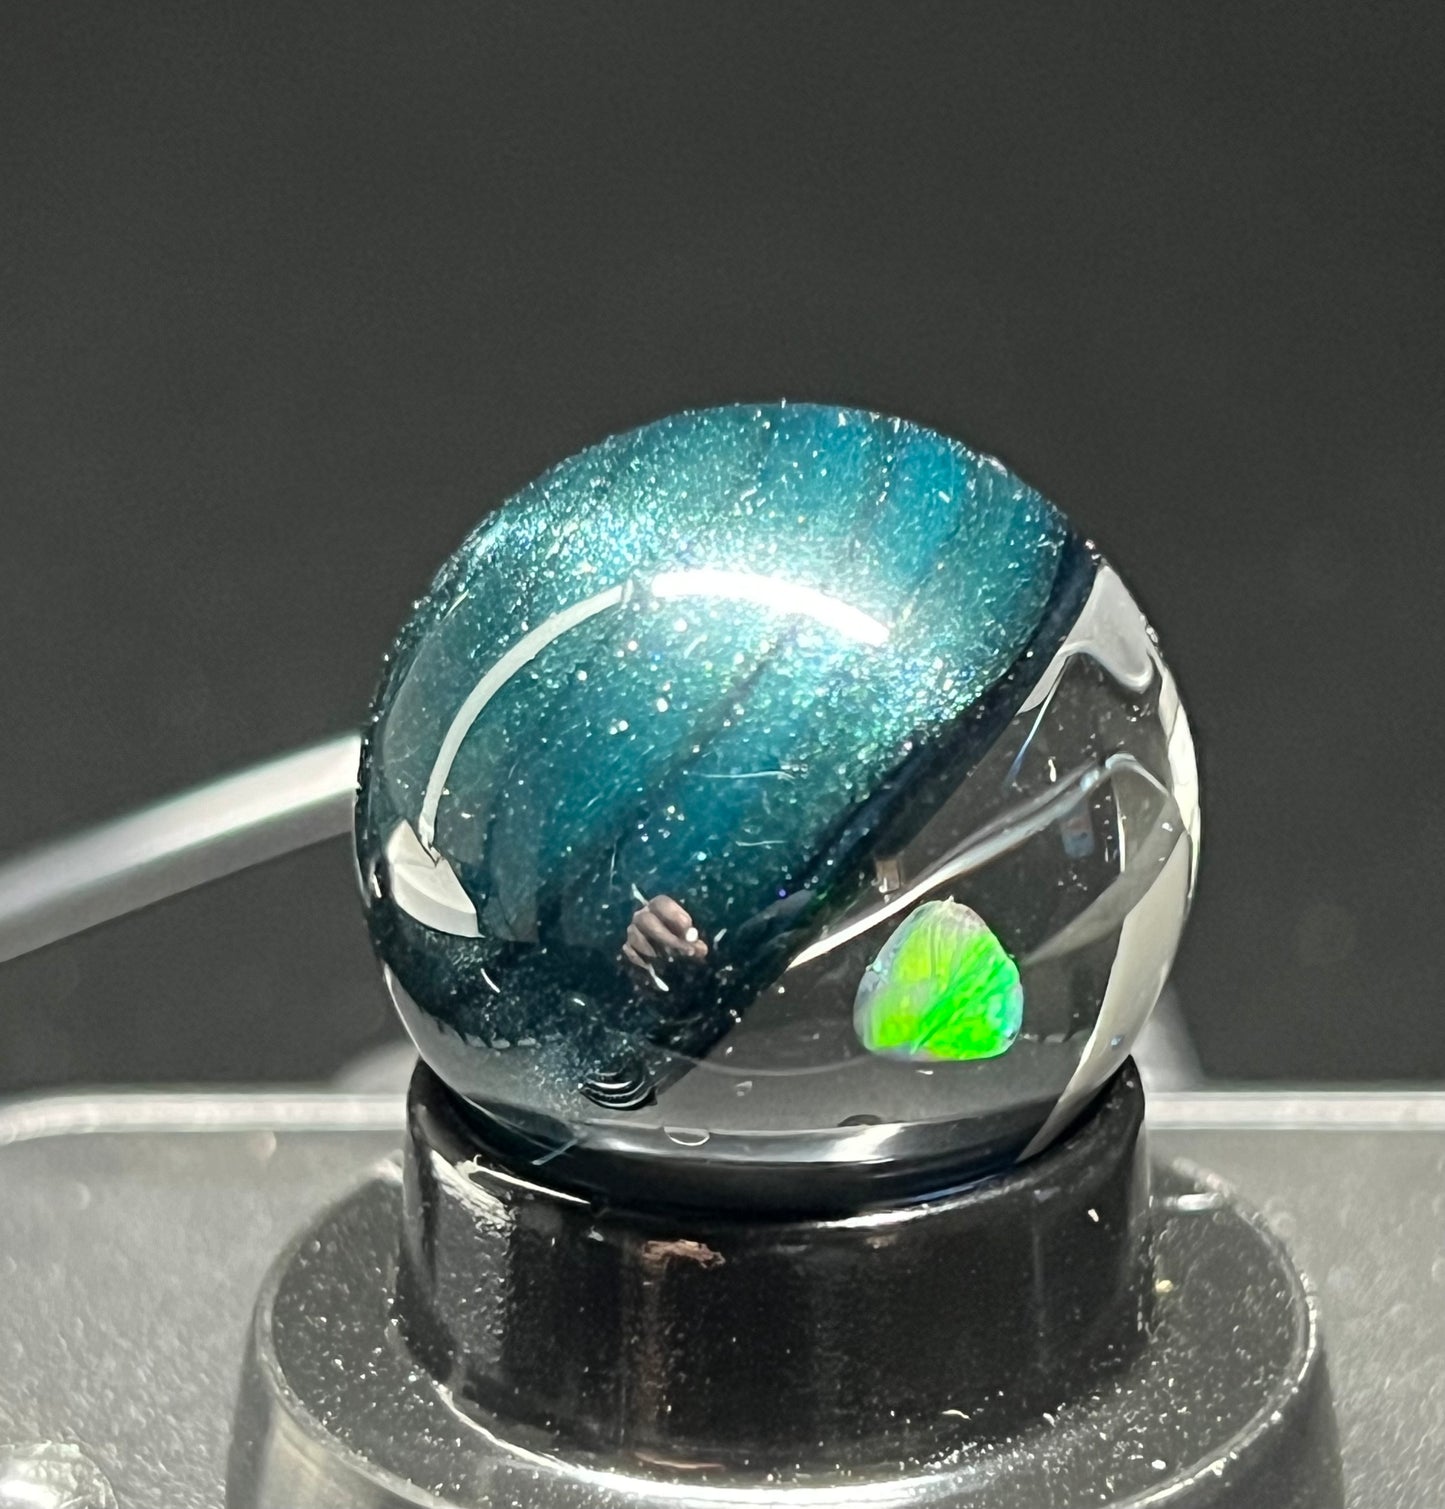 Slurper Marble with Opal